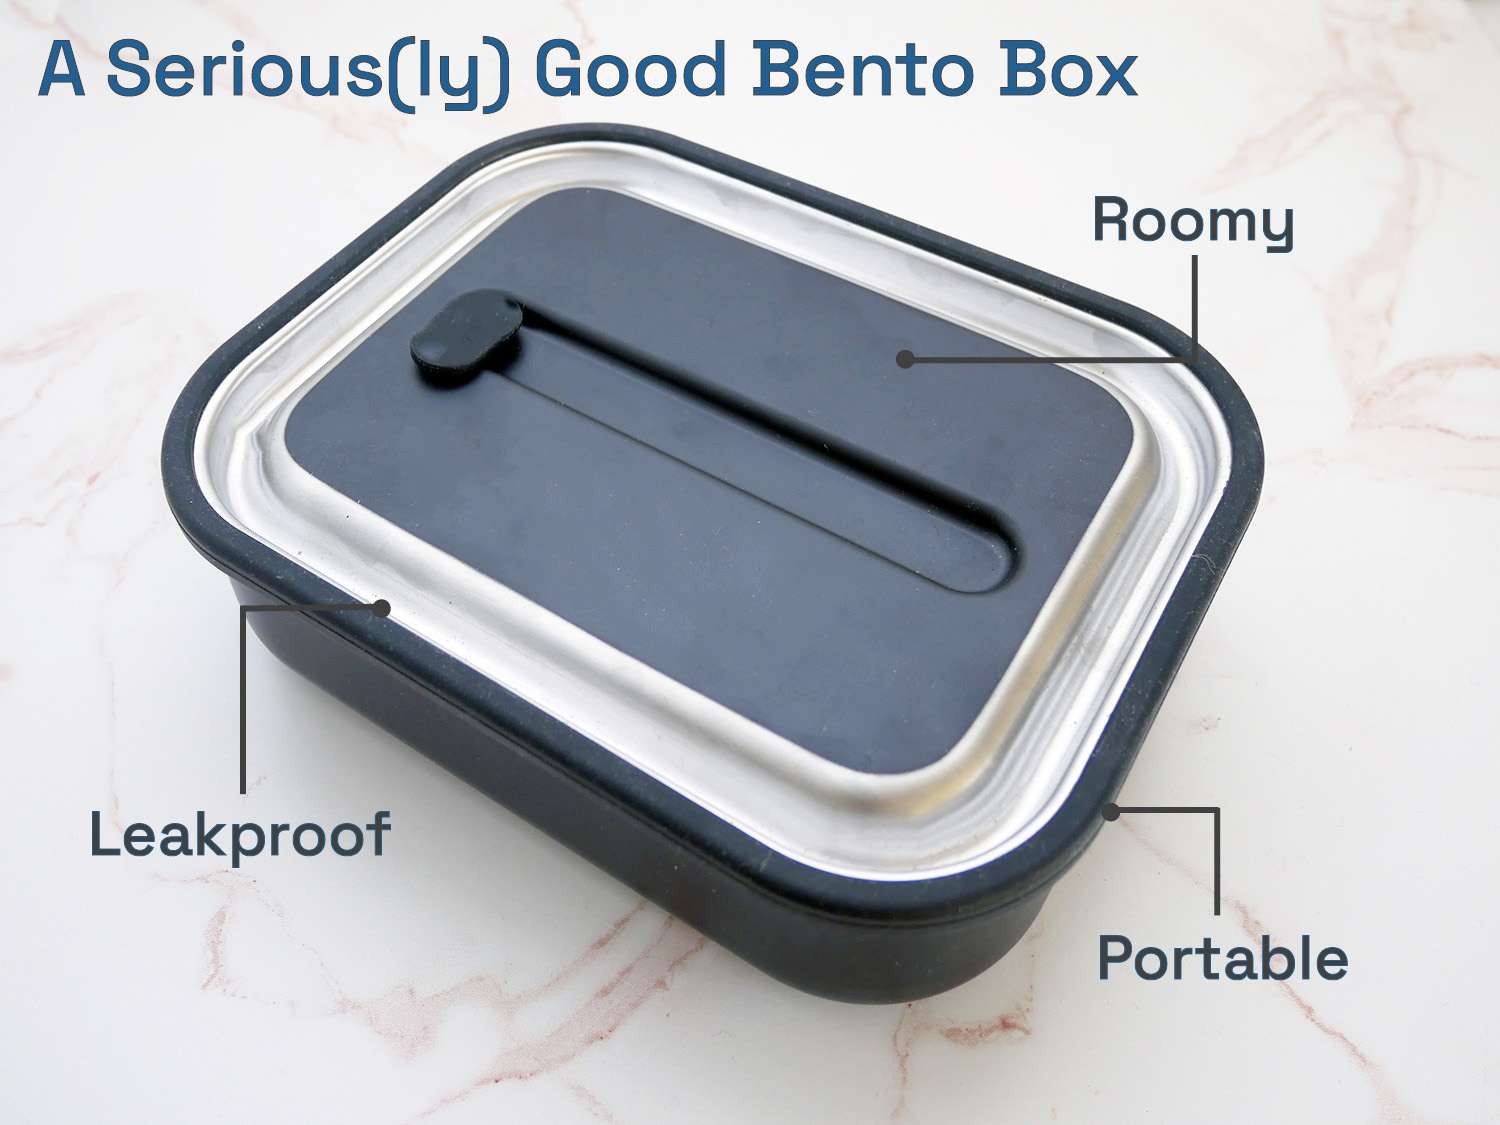 一个非常好的便当盒:宽敞、防漏、便携